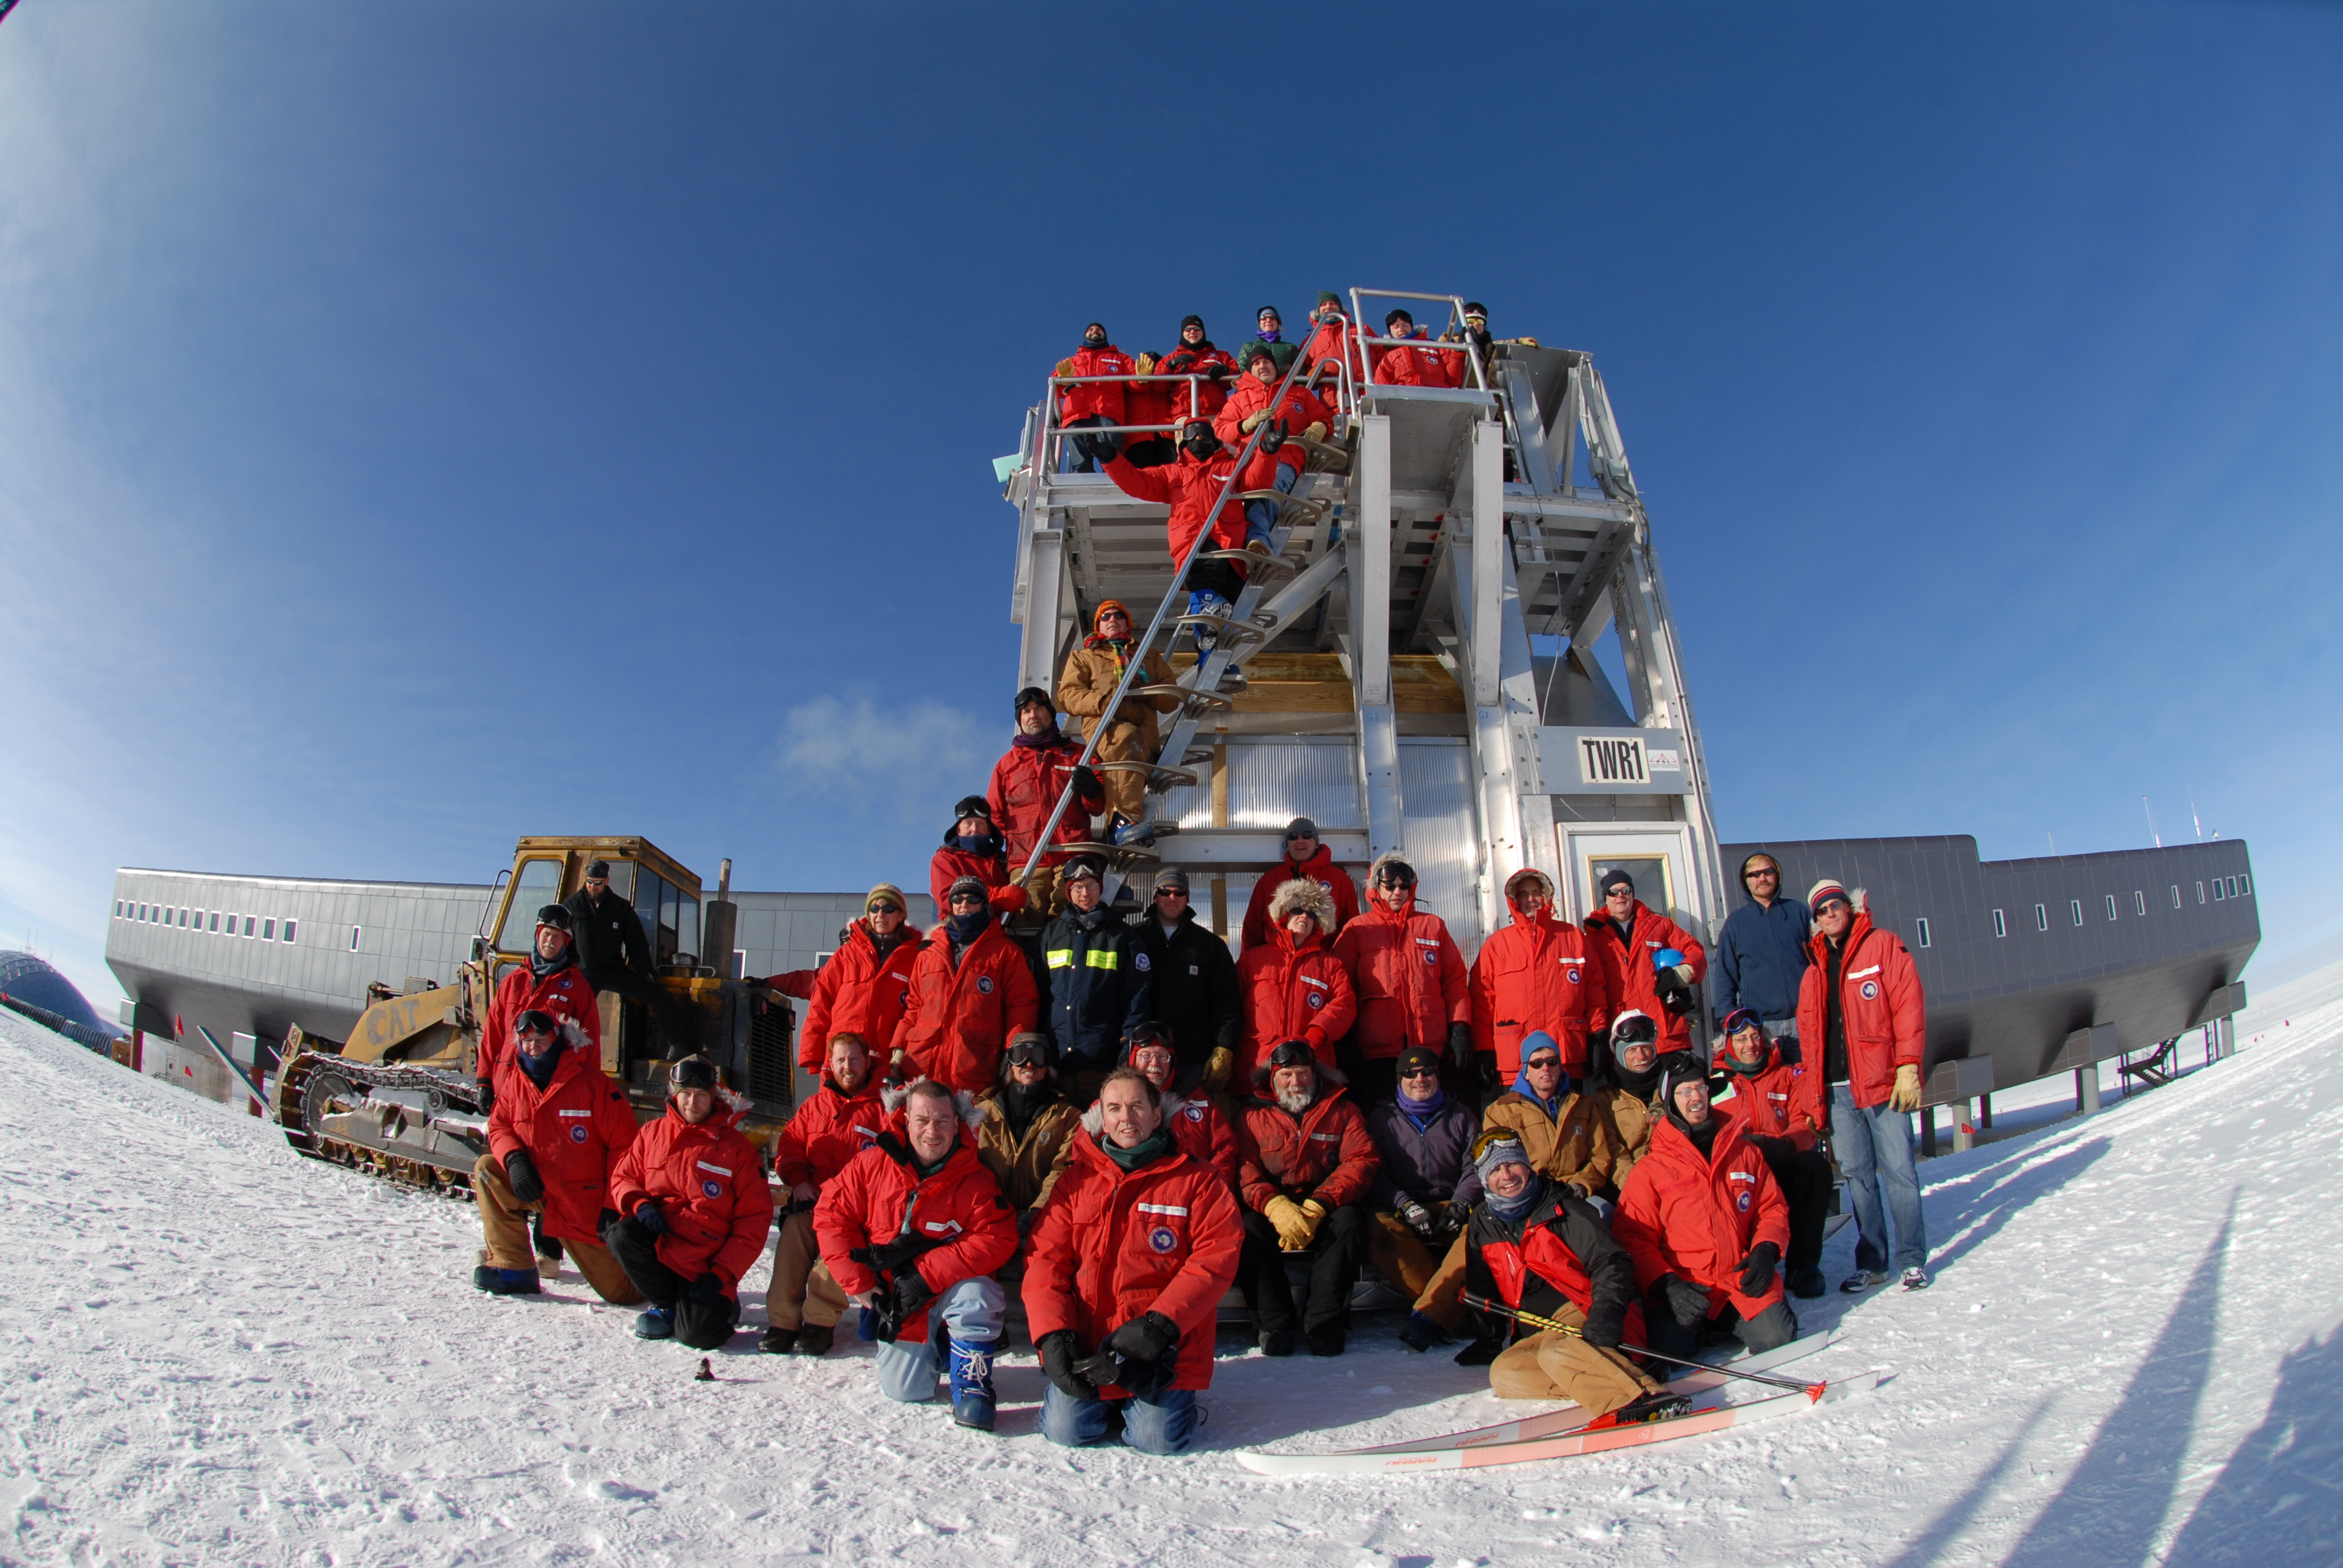 IceCube South Pole team for the 2007-2008 season